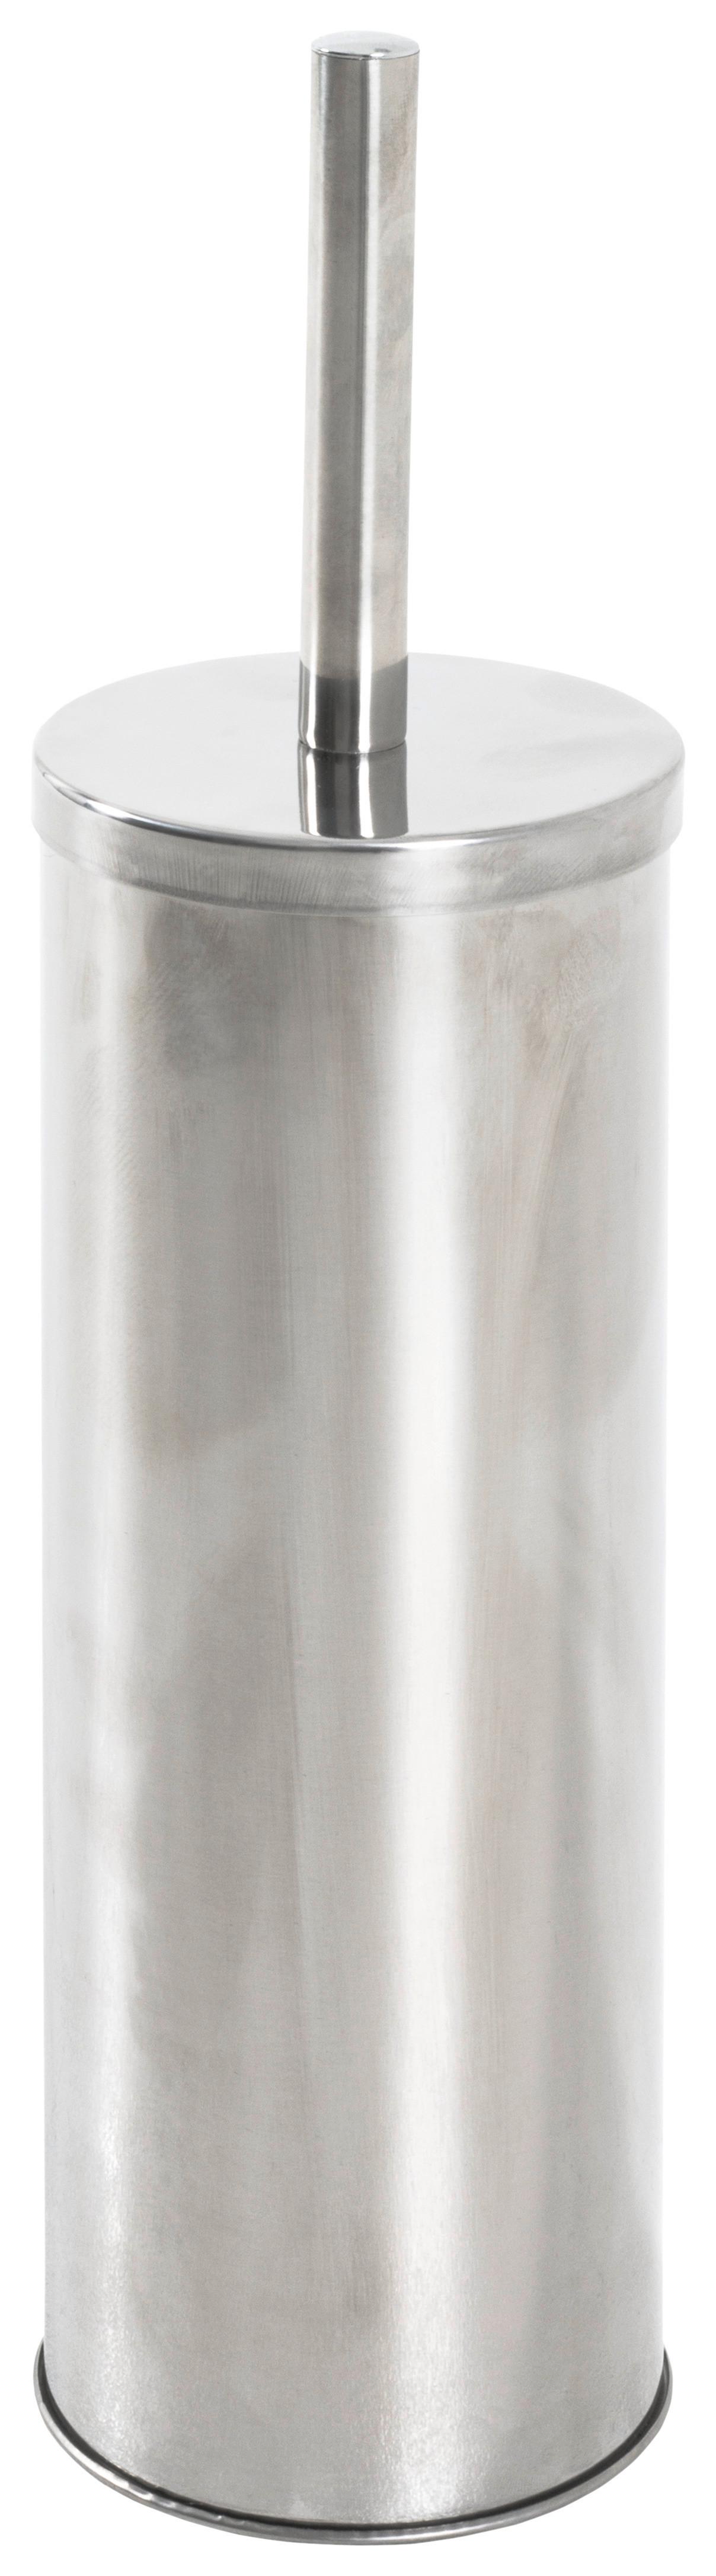 Wc Sada 18799 Kosmo - barvy nerez oceli, Konvenční, kov/plast (10/38cm)